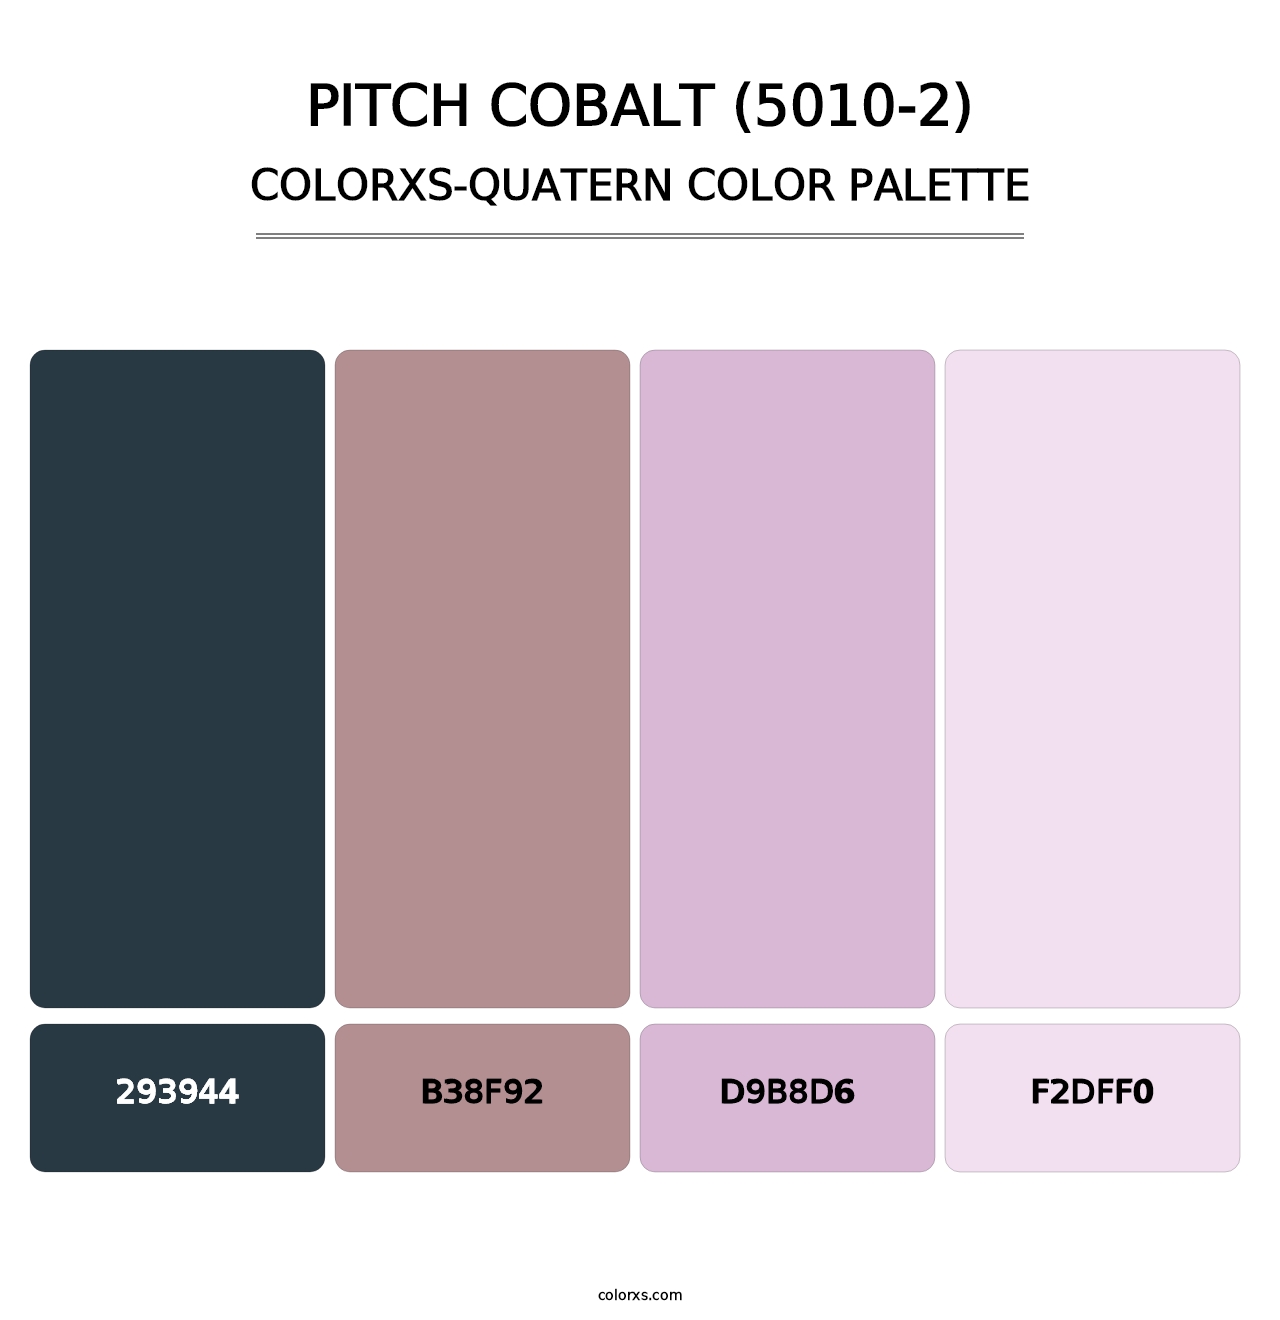 Pitch Cobalt (5010-2) - Colorxs Quatern Palette